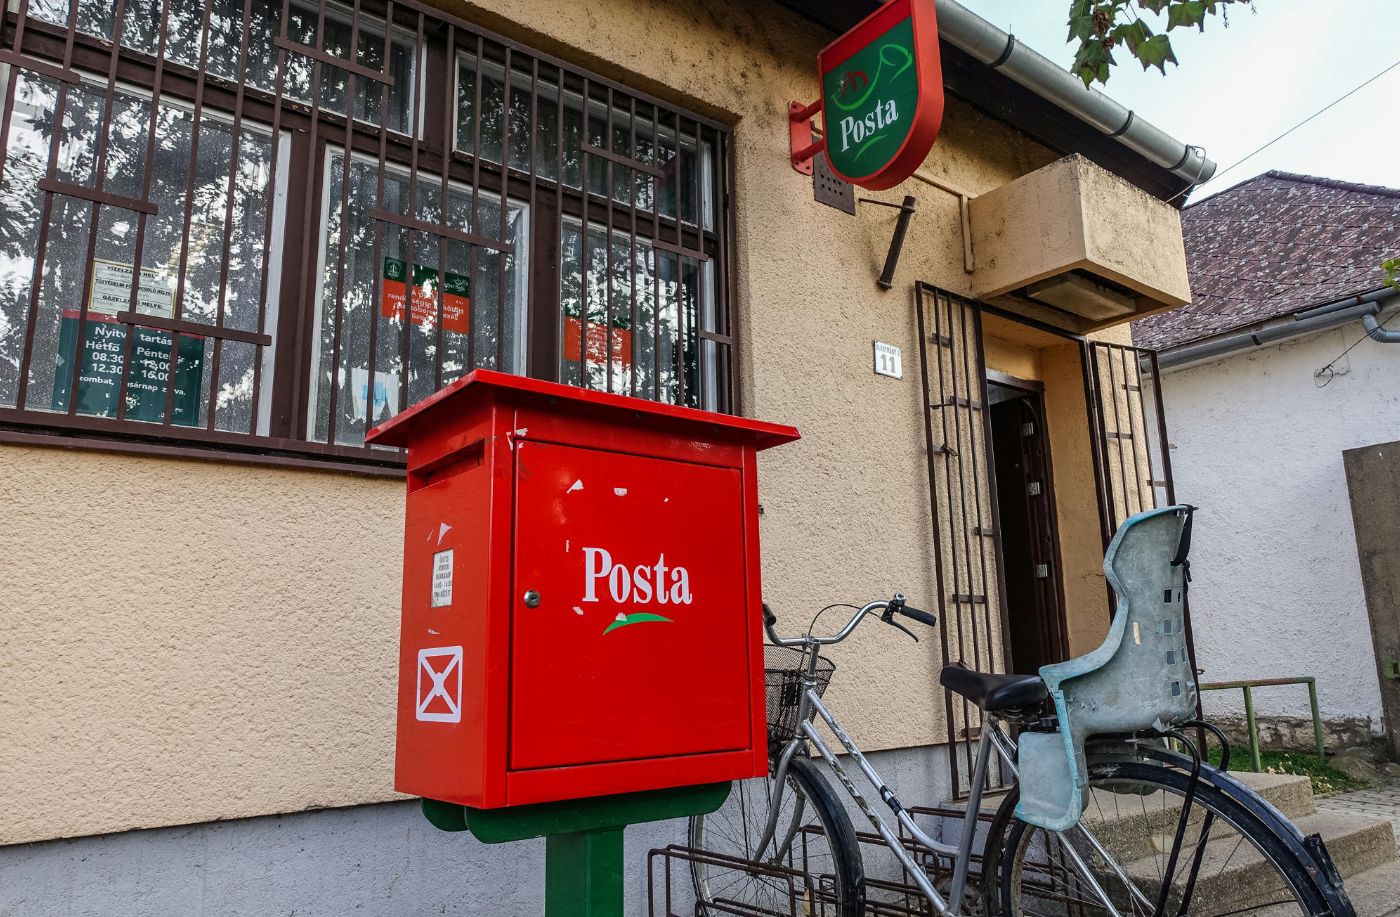 265* ezer forintot fizet a Posta azoknak a kistelepülési vállalkozónak, akik átvállalják a helyi posta feladatait